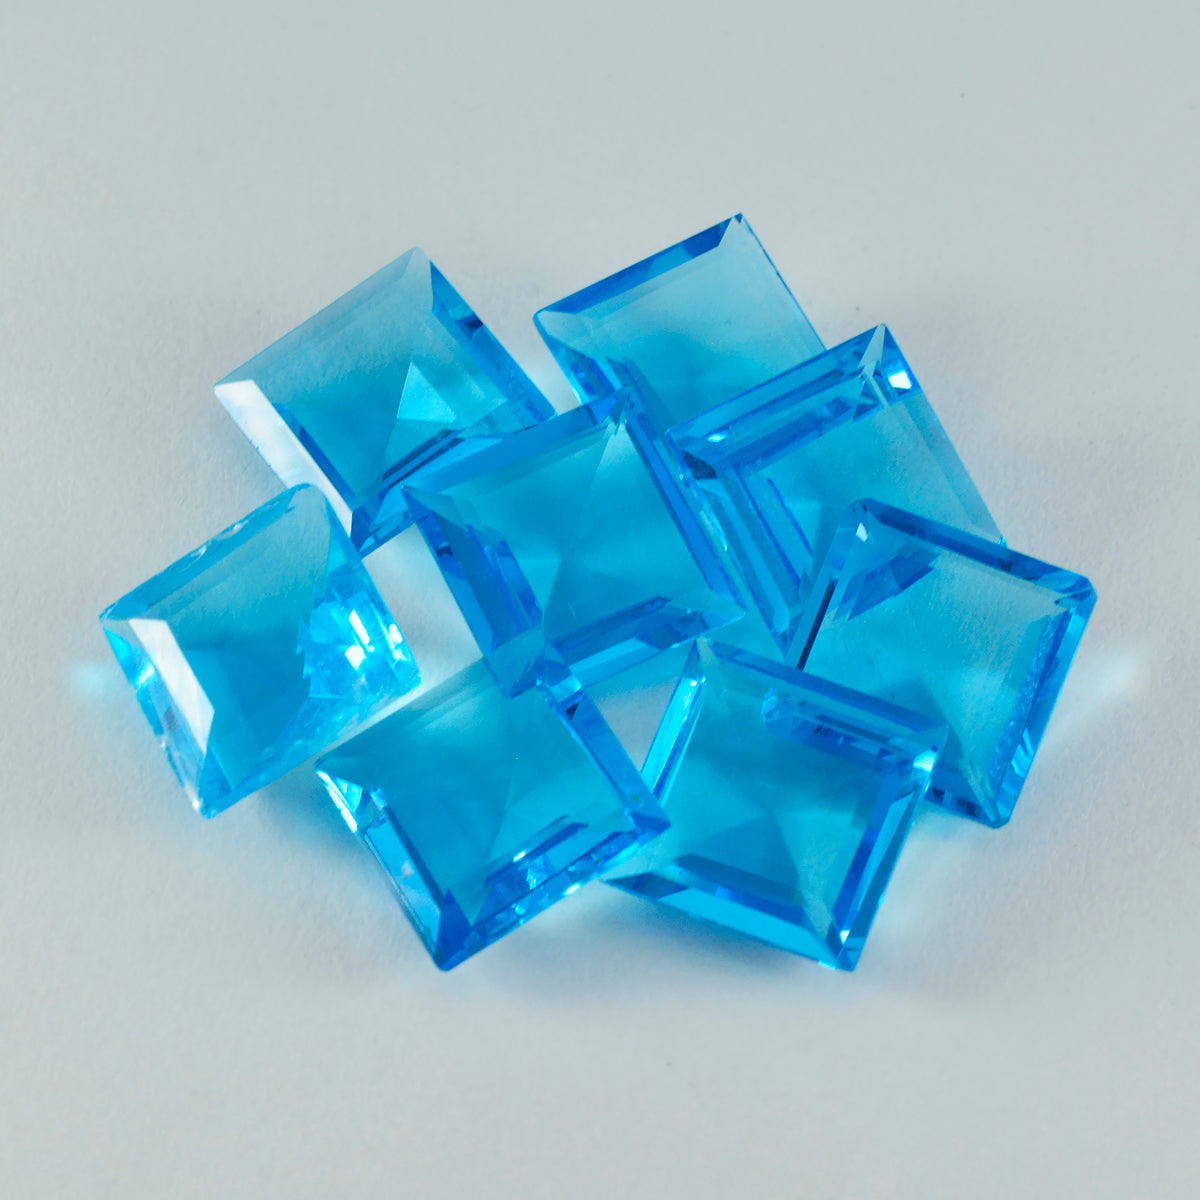 Riyogems 1 Stück blauer Topas, CZ, facettiert, 13 x 13 mm, quadratische Form, Edelstein von erstaunlicher Qualität